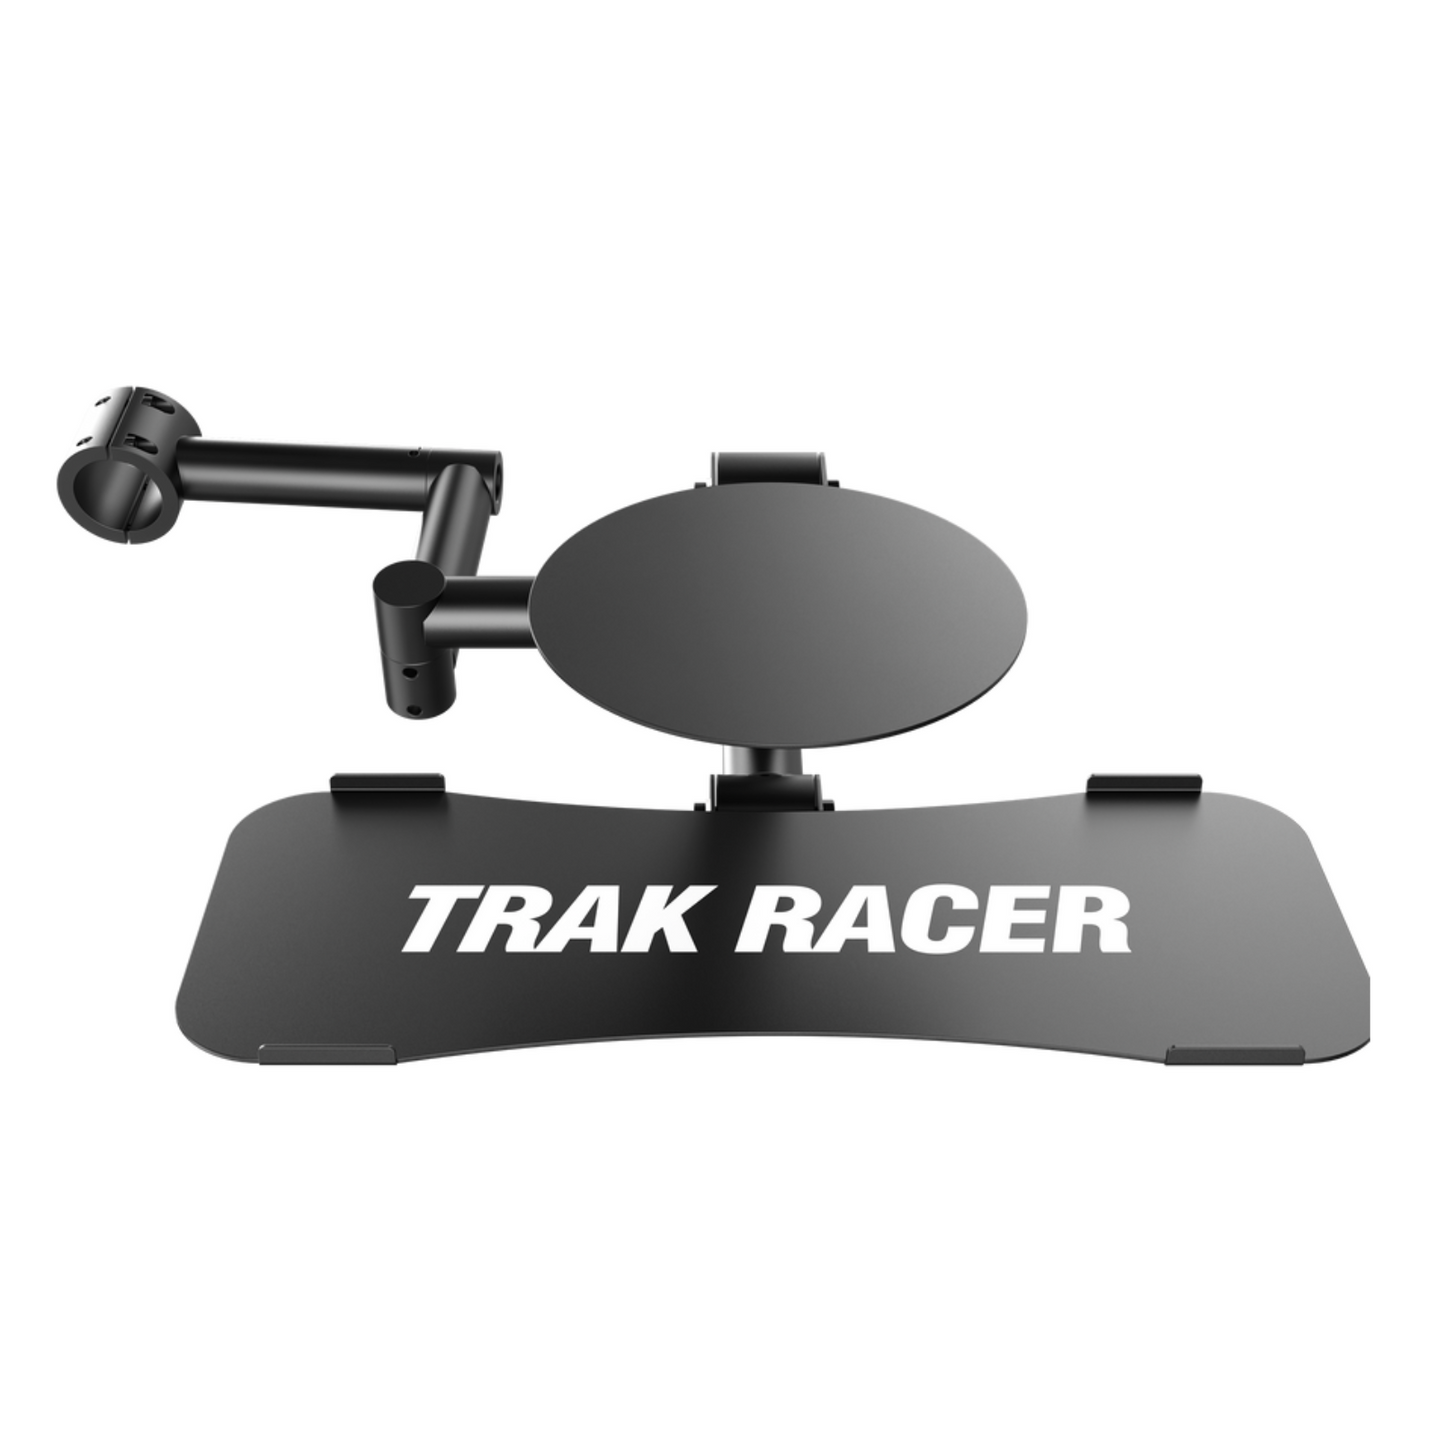 Bàn phím và chuột Trak Racer gắn TR8 và F1 mới